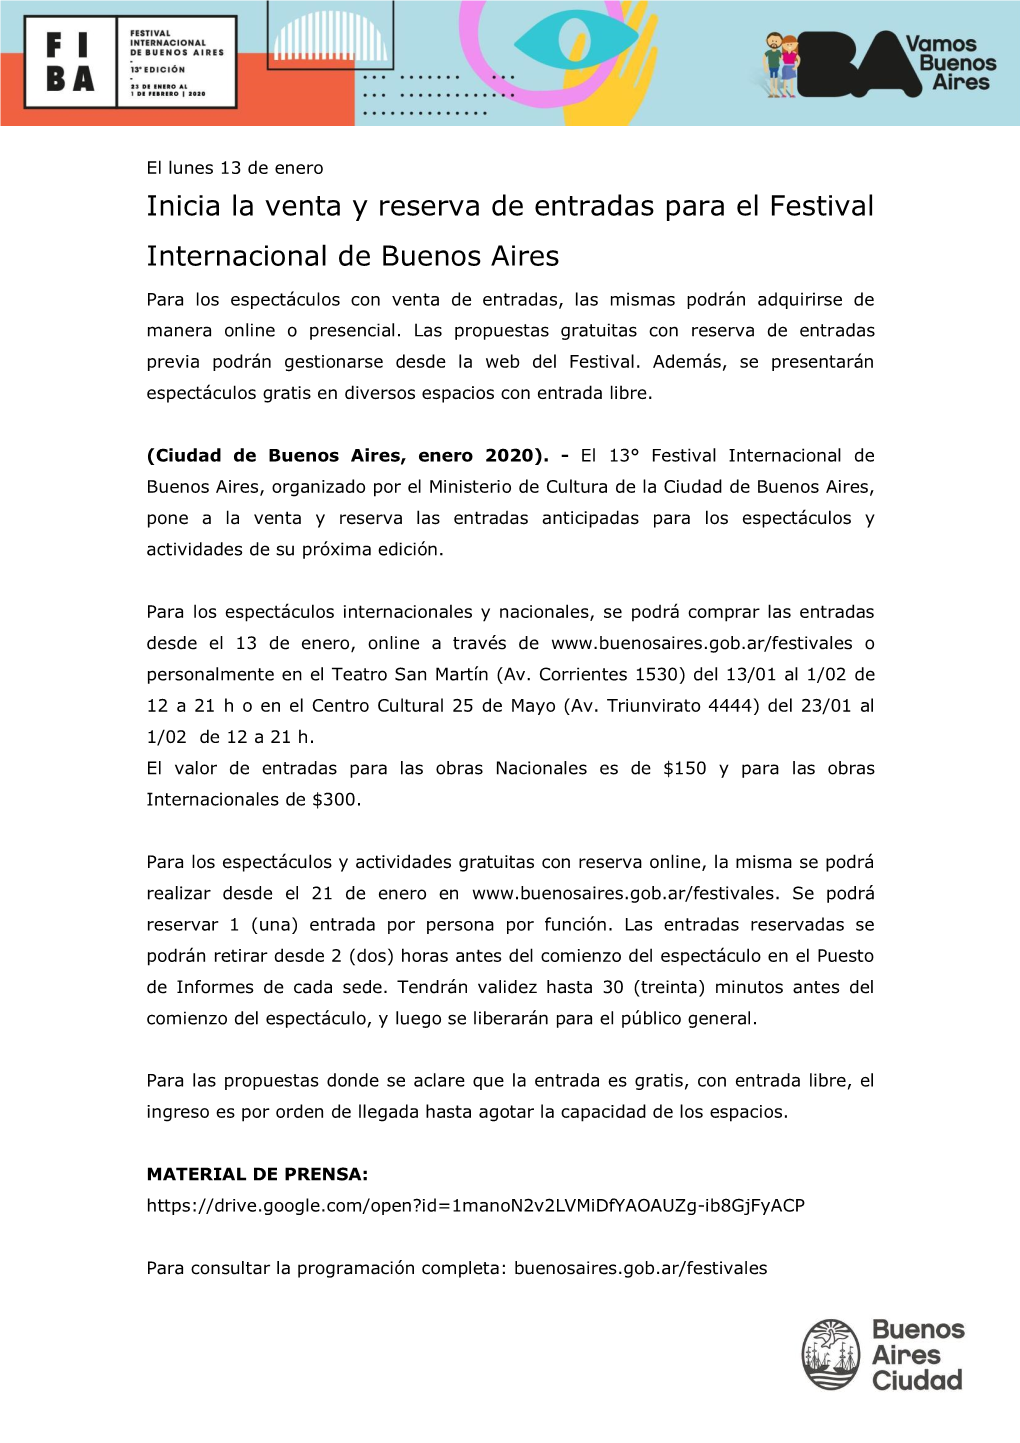 Inicia La Venta Y Reserva De Entradas Para El Festival Internacional De Buenos Aires